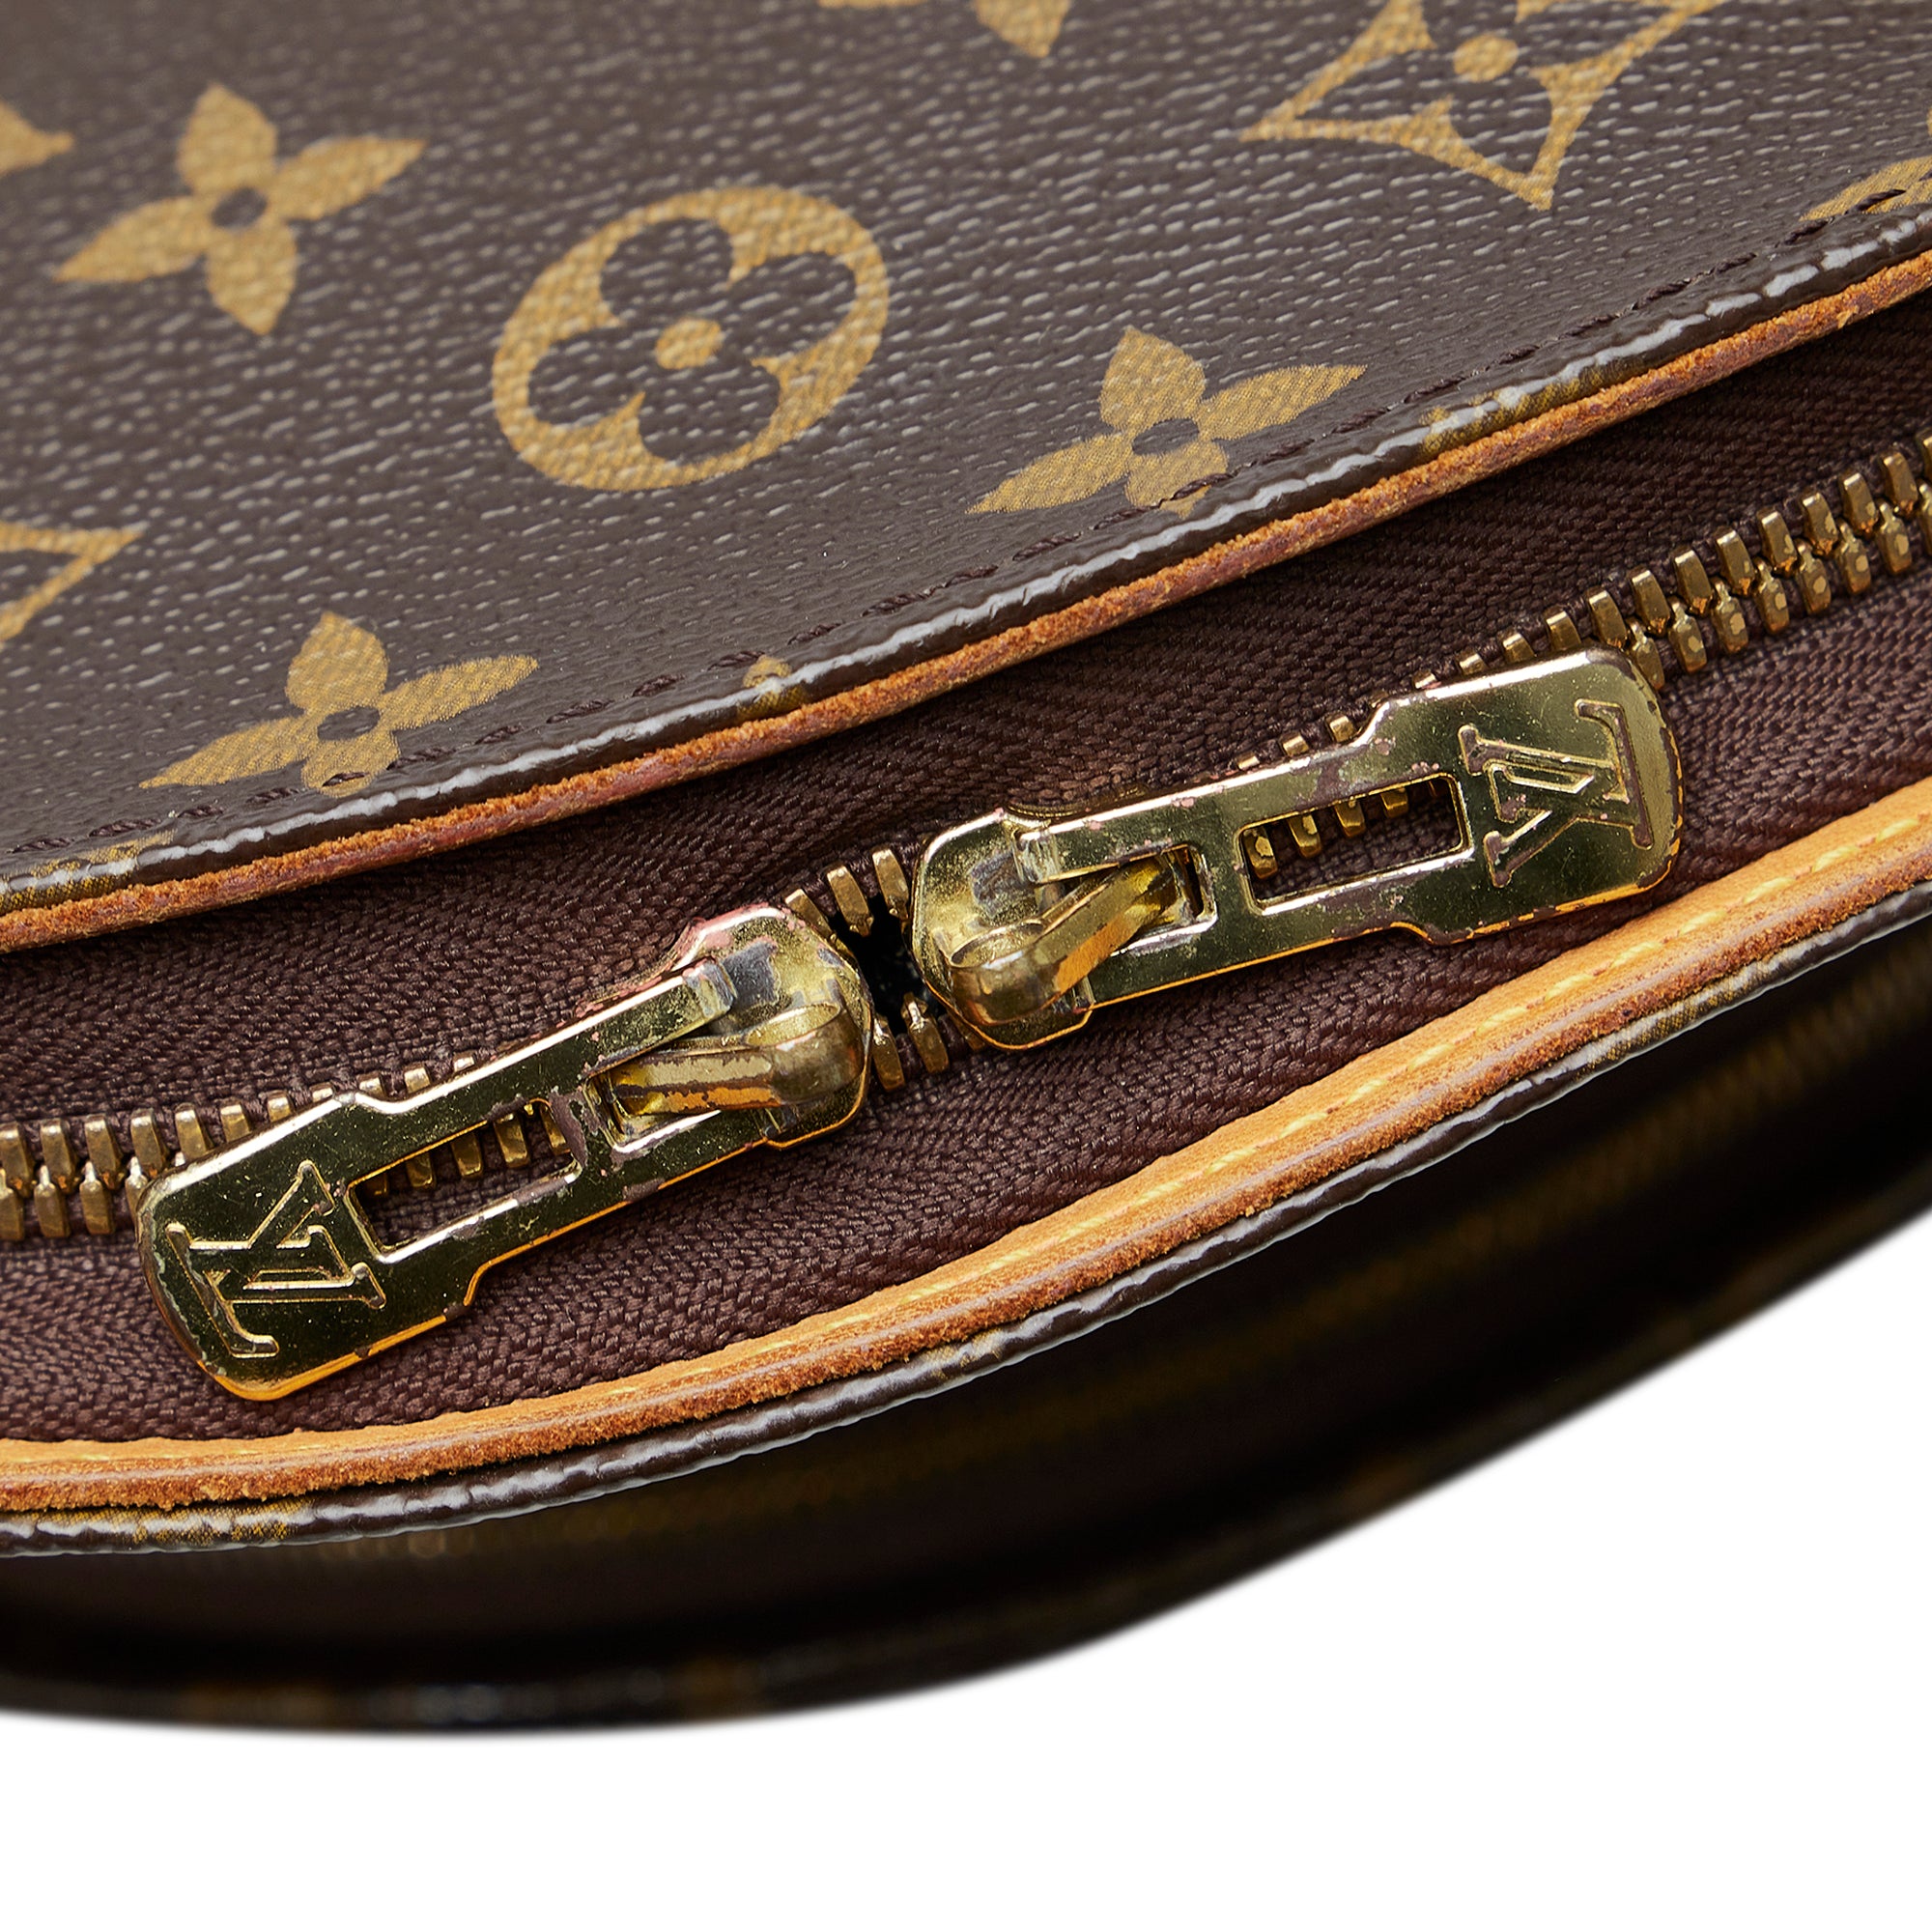 127-0Shops Revival, Brown Louis Vuitton Monogram Ellipse MM Handbag